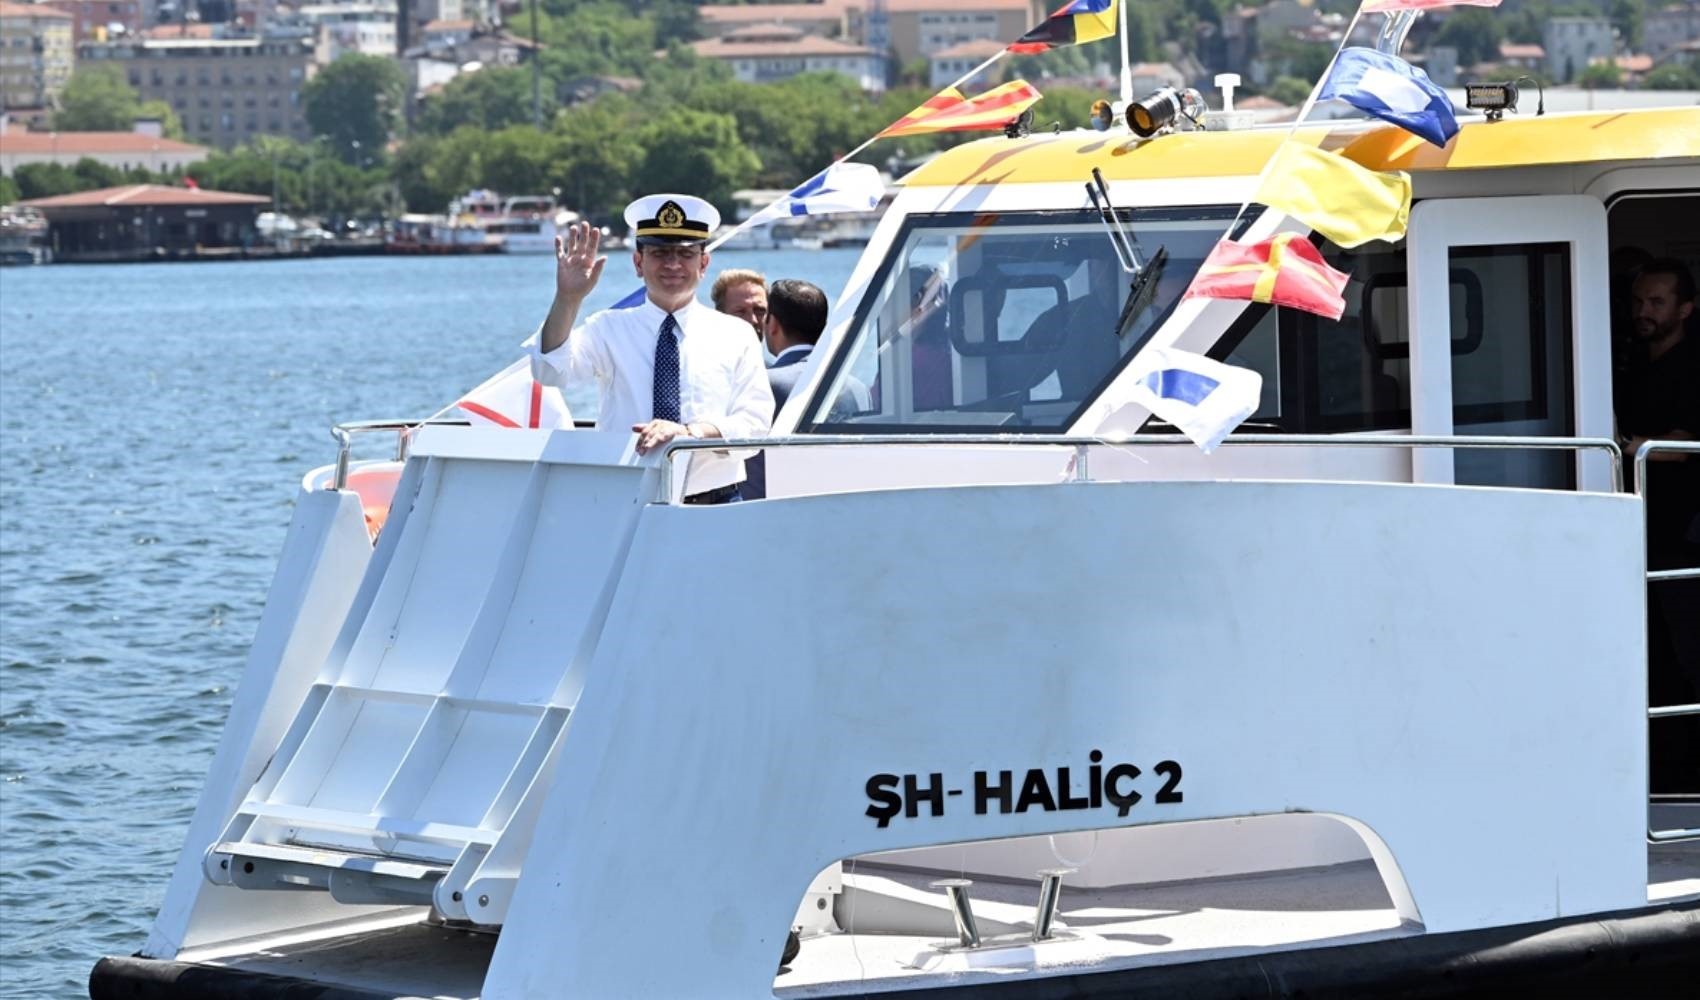 İmamoğlu 'Deniz Dolmuş' töreninde konuştu: 'Dünyada sadece İstanbul'da var olan bir nimet'